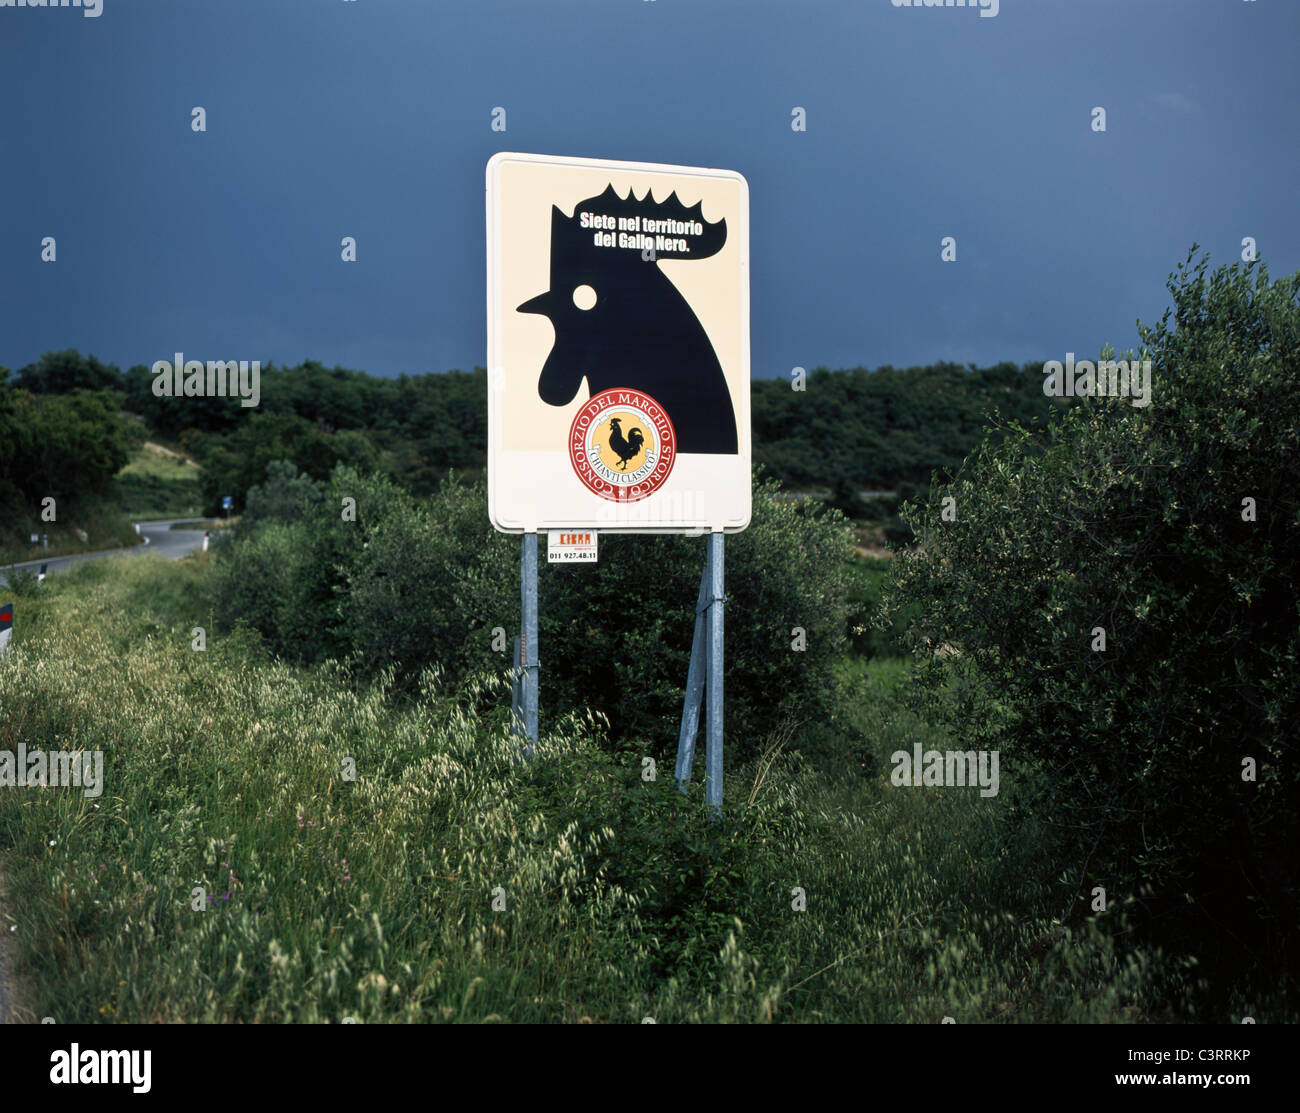 Verkehrszeichen in der Toskana zeigen das "Gallo Nero" (schwarzer Hahn), das Marketing-Emblem für Chianti Classico, Italien Stockfoto